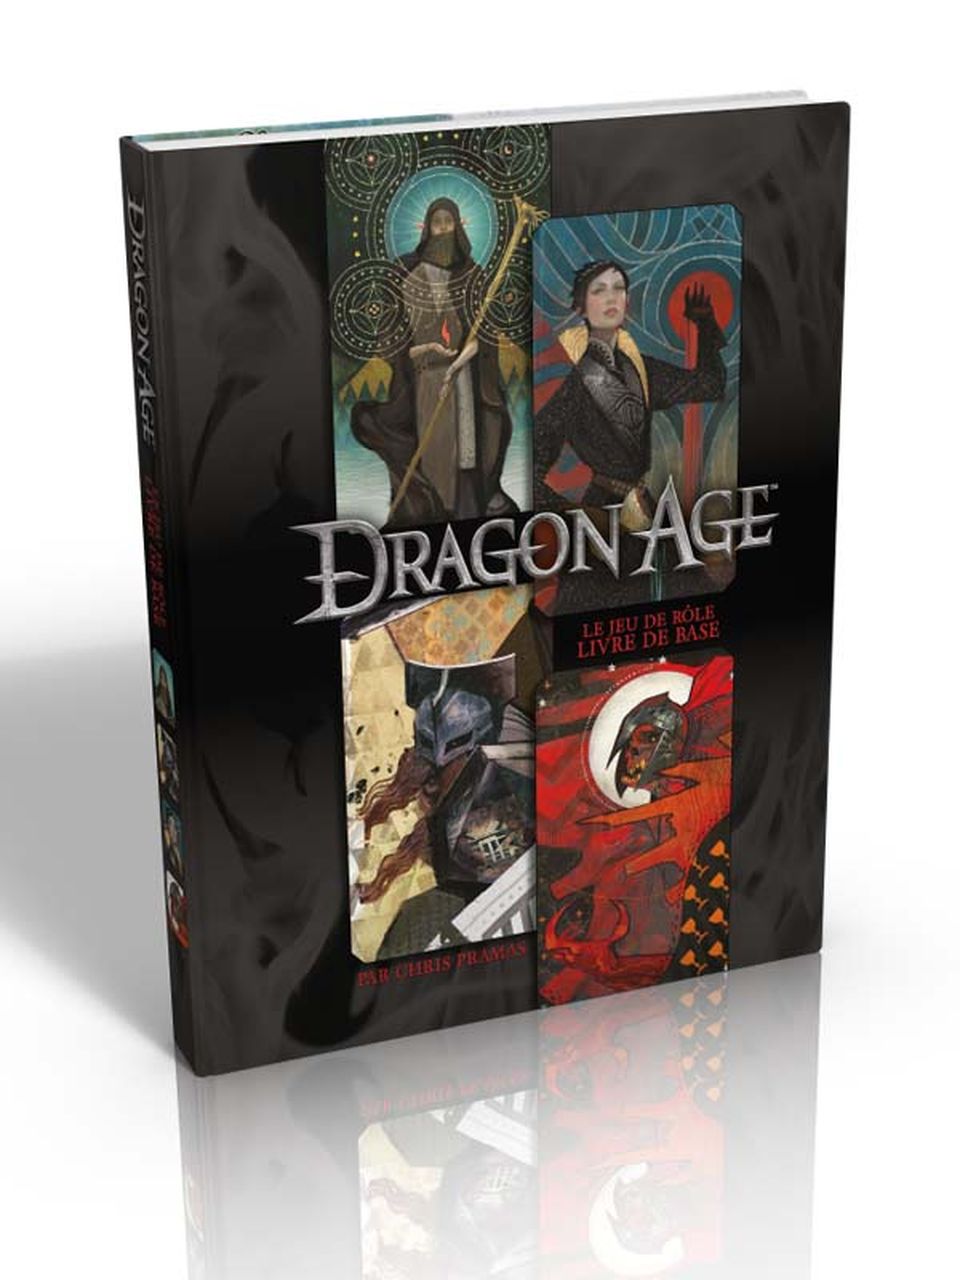 Dragon Age - Livre de base (réimpression) image